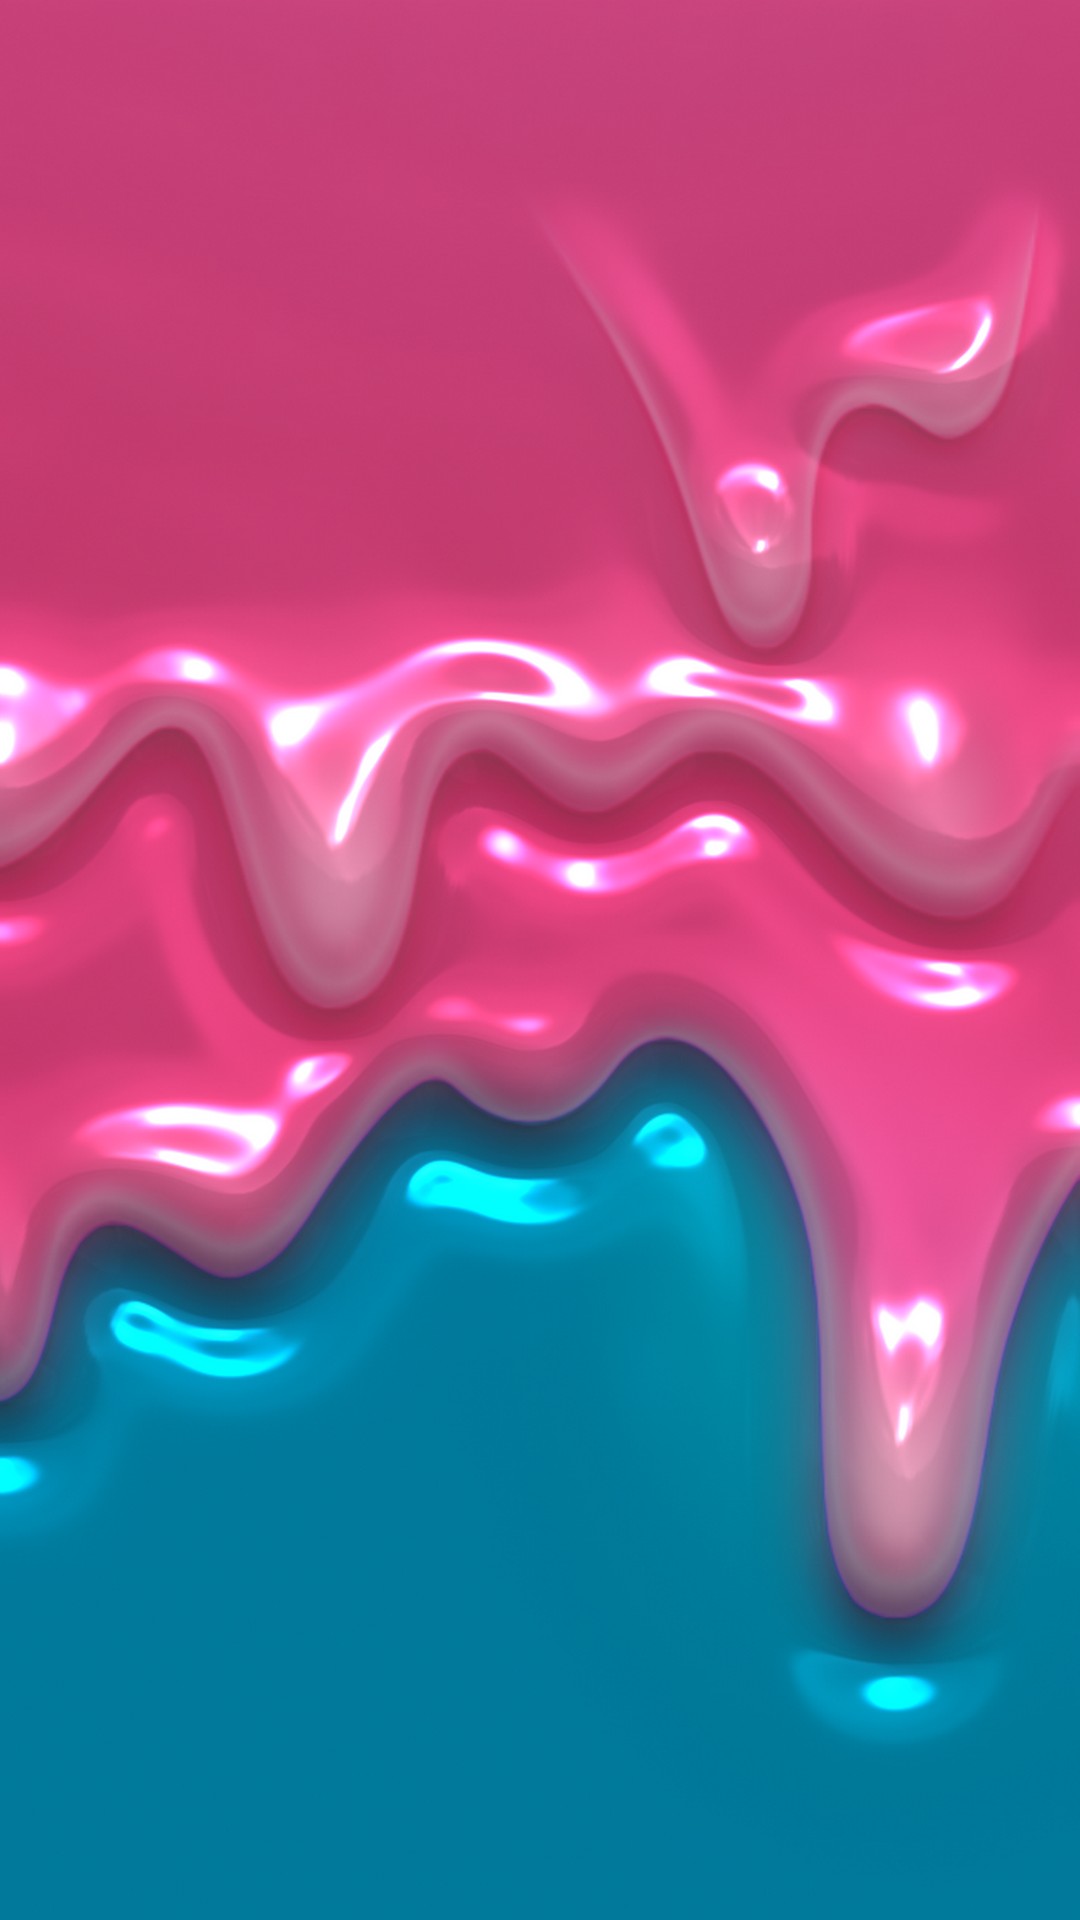 iPhone X Pink Liquid Wallpaper 3d